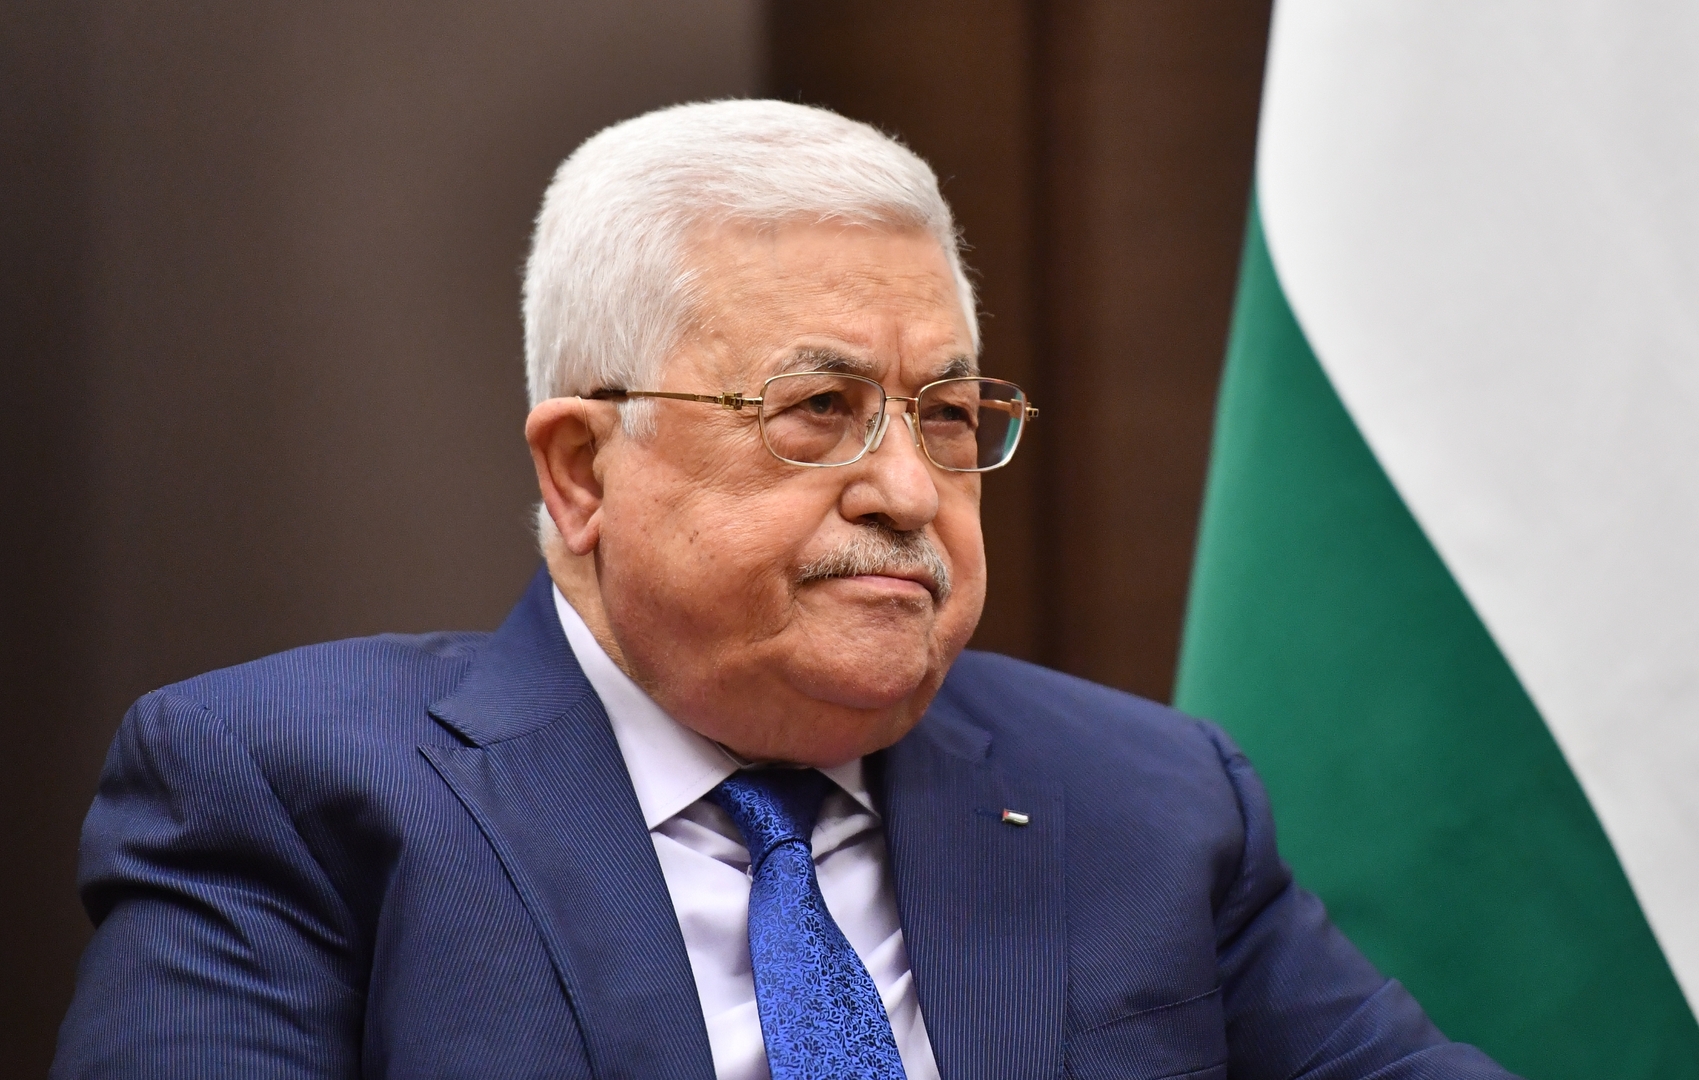 السفير الفلسطيني يكشف العائق أمام زيارة عباس إلى موسكو